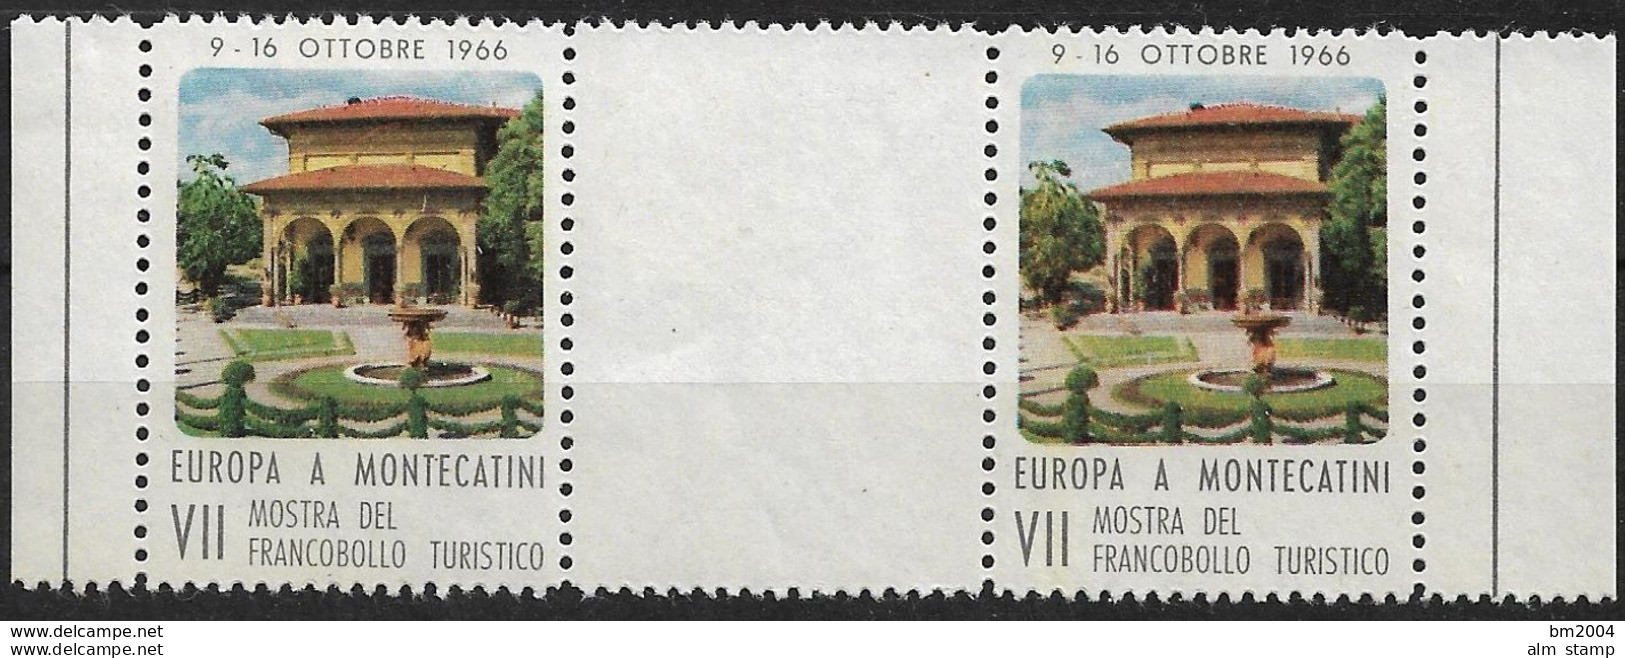 1966 Italien VII Mostra Del Francobollo Turistico Europa Montecatini **MNH - 1966